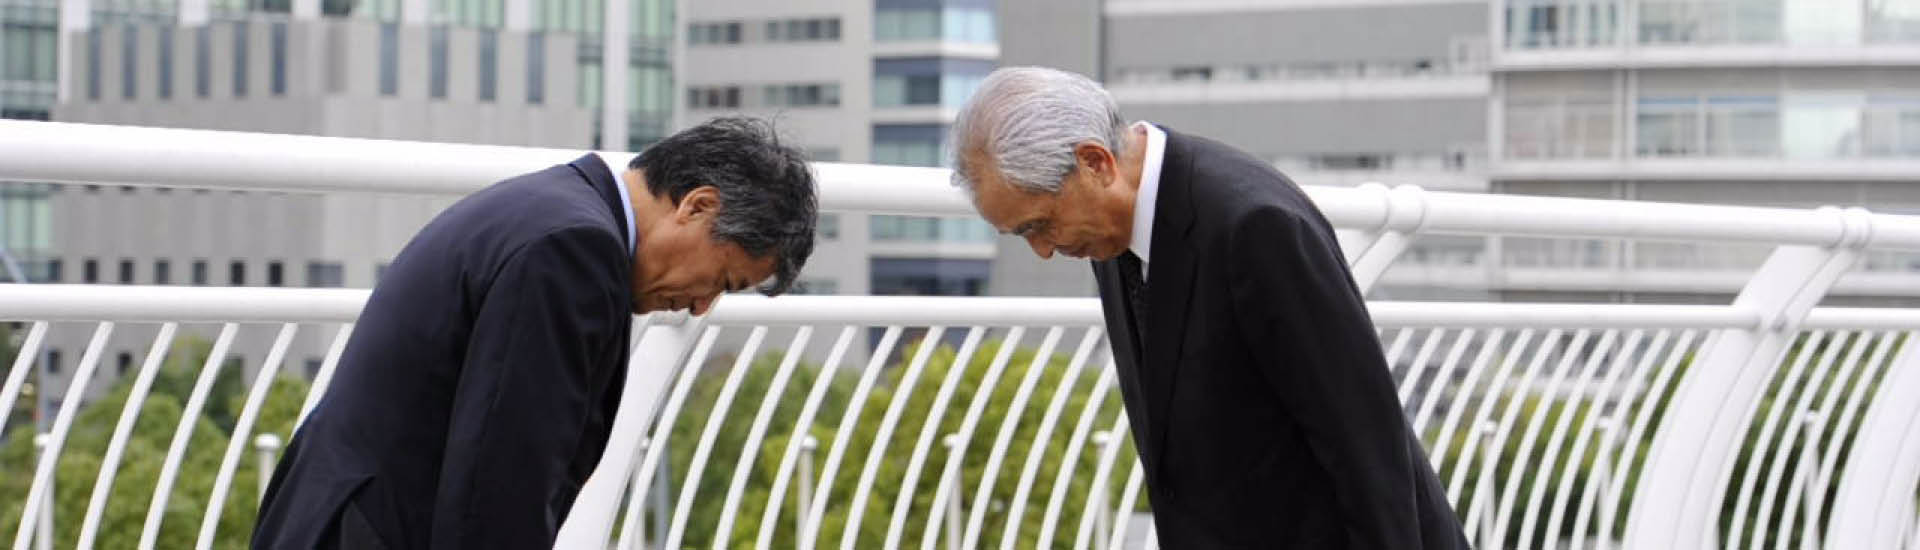 Dois homens de terno preto se cumprimentam com gesto japonês de se curvar, abaixando a cabeça, em demonstração de respeito.